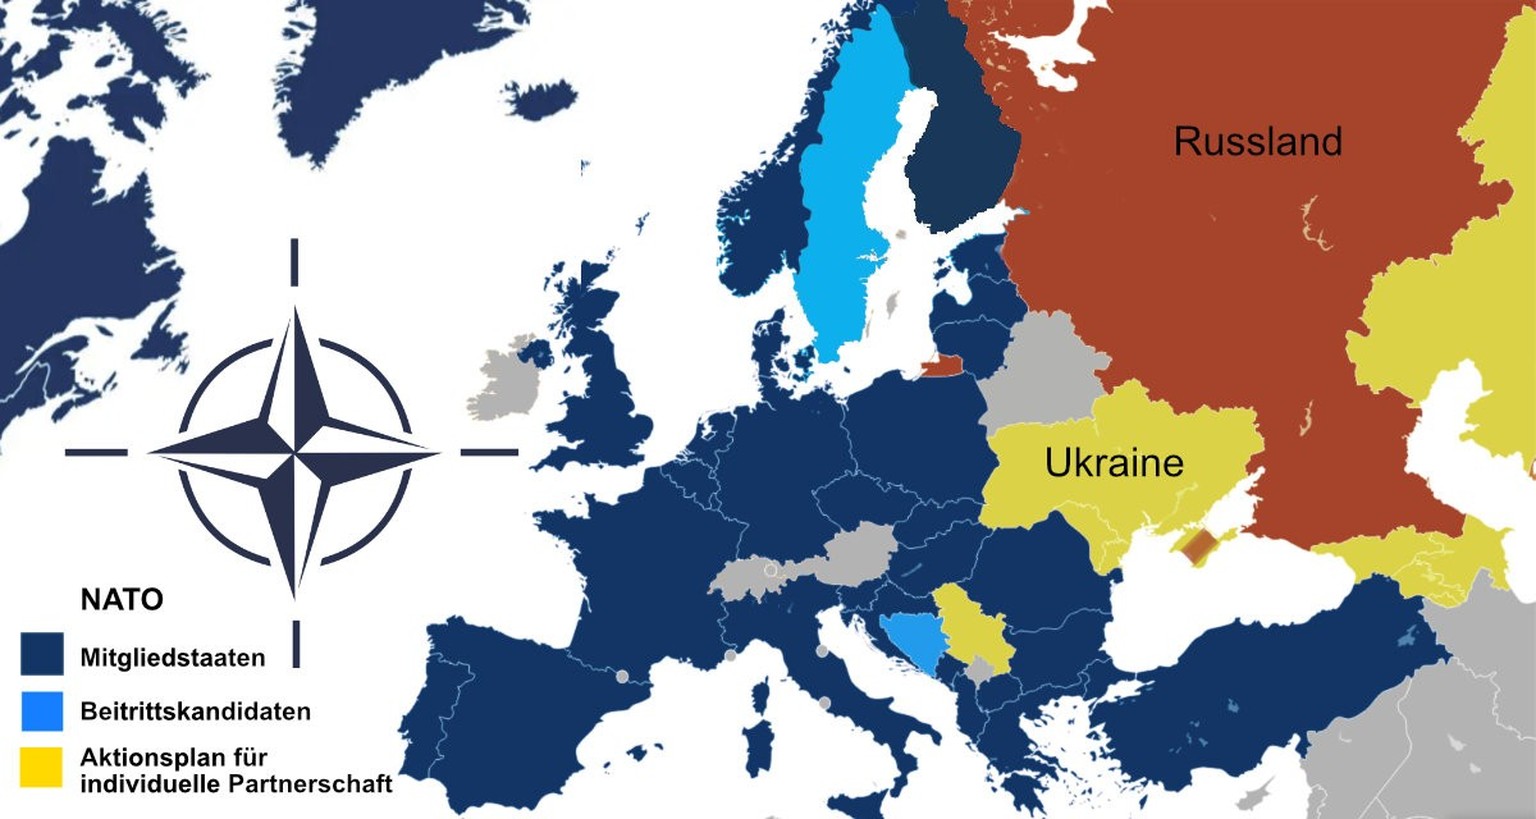 Karte der NATO-Zugehörigkeiten in Europa. Abbildung: San Jose, Wikipedia, gemeinfrei. Angepasst von der Internetredaktion der LpB BW, Stand 4.4.2023.
https://osteuropa.lpb-bw.de/nato-gipfeltreffen#c83 ...